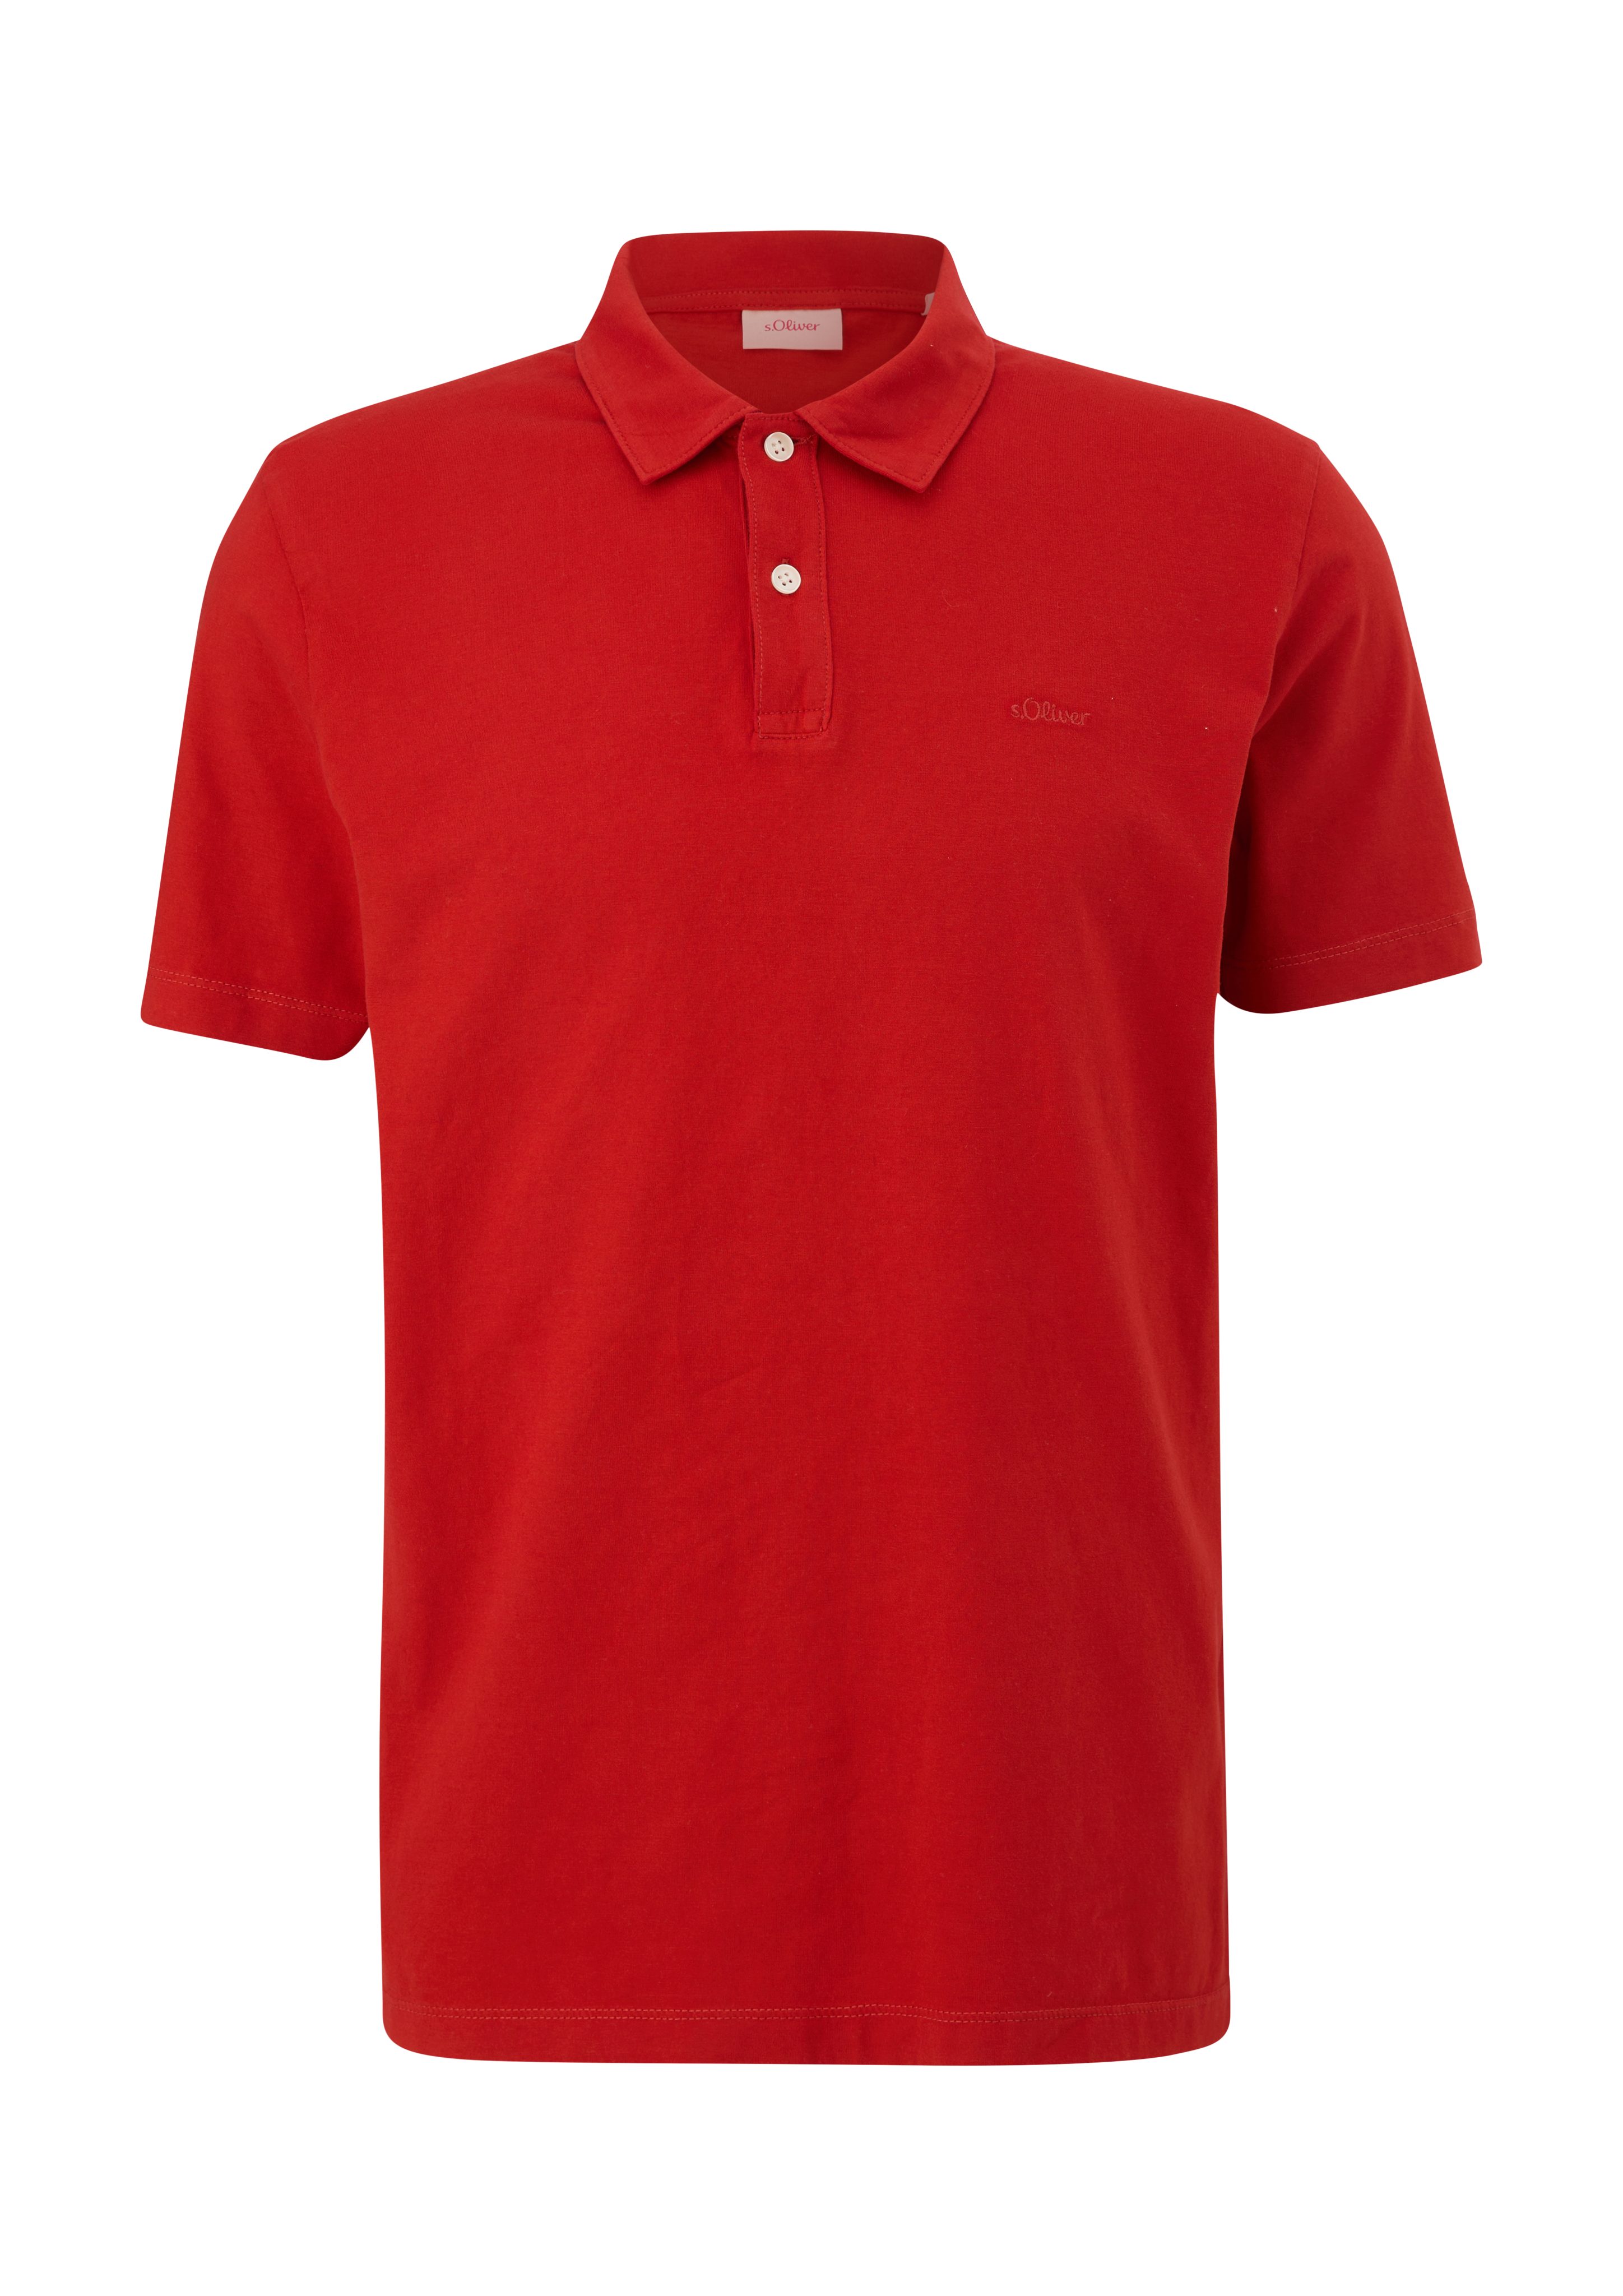 s.Oliver Kurzarmshirt Poloshirt aus preiselbeere Logo Baumwolle